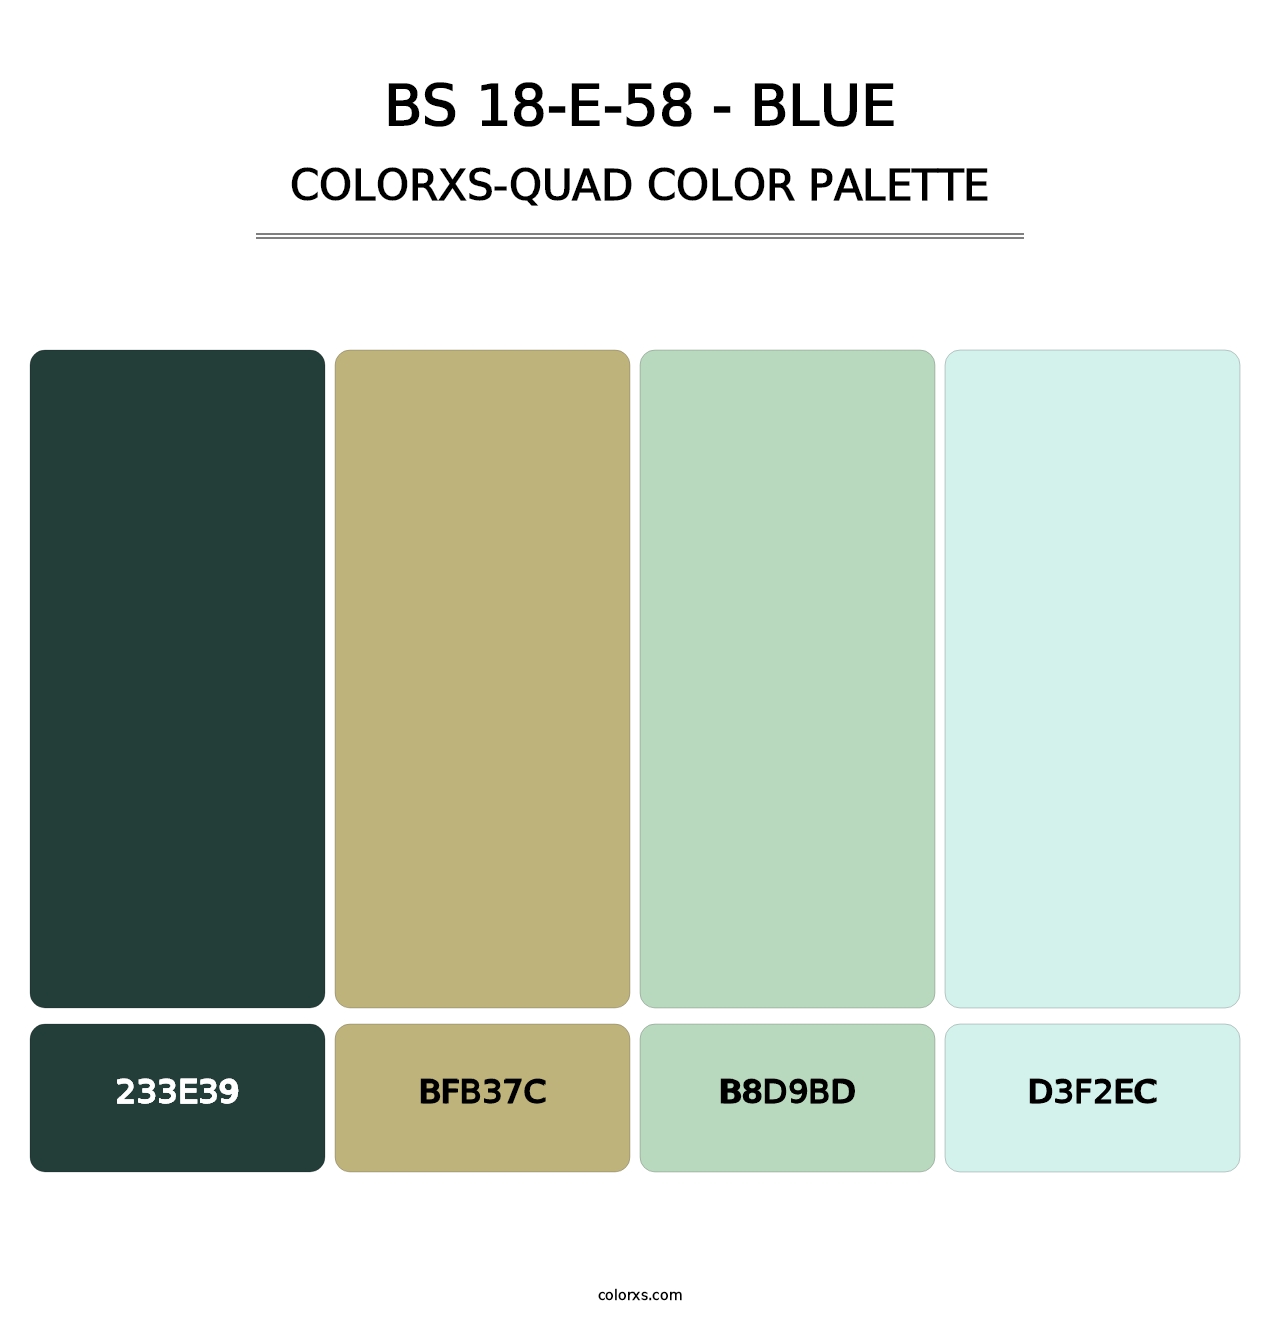 BS 18-E-58 - Blue - Colorxs Quad Palette